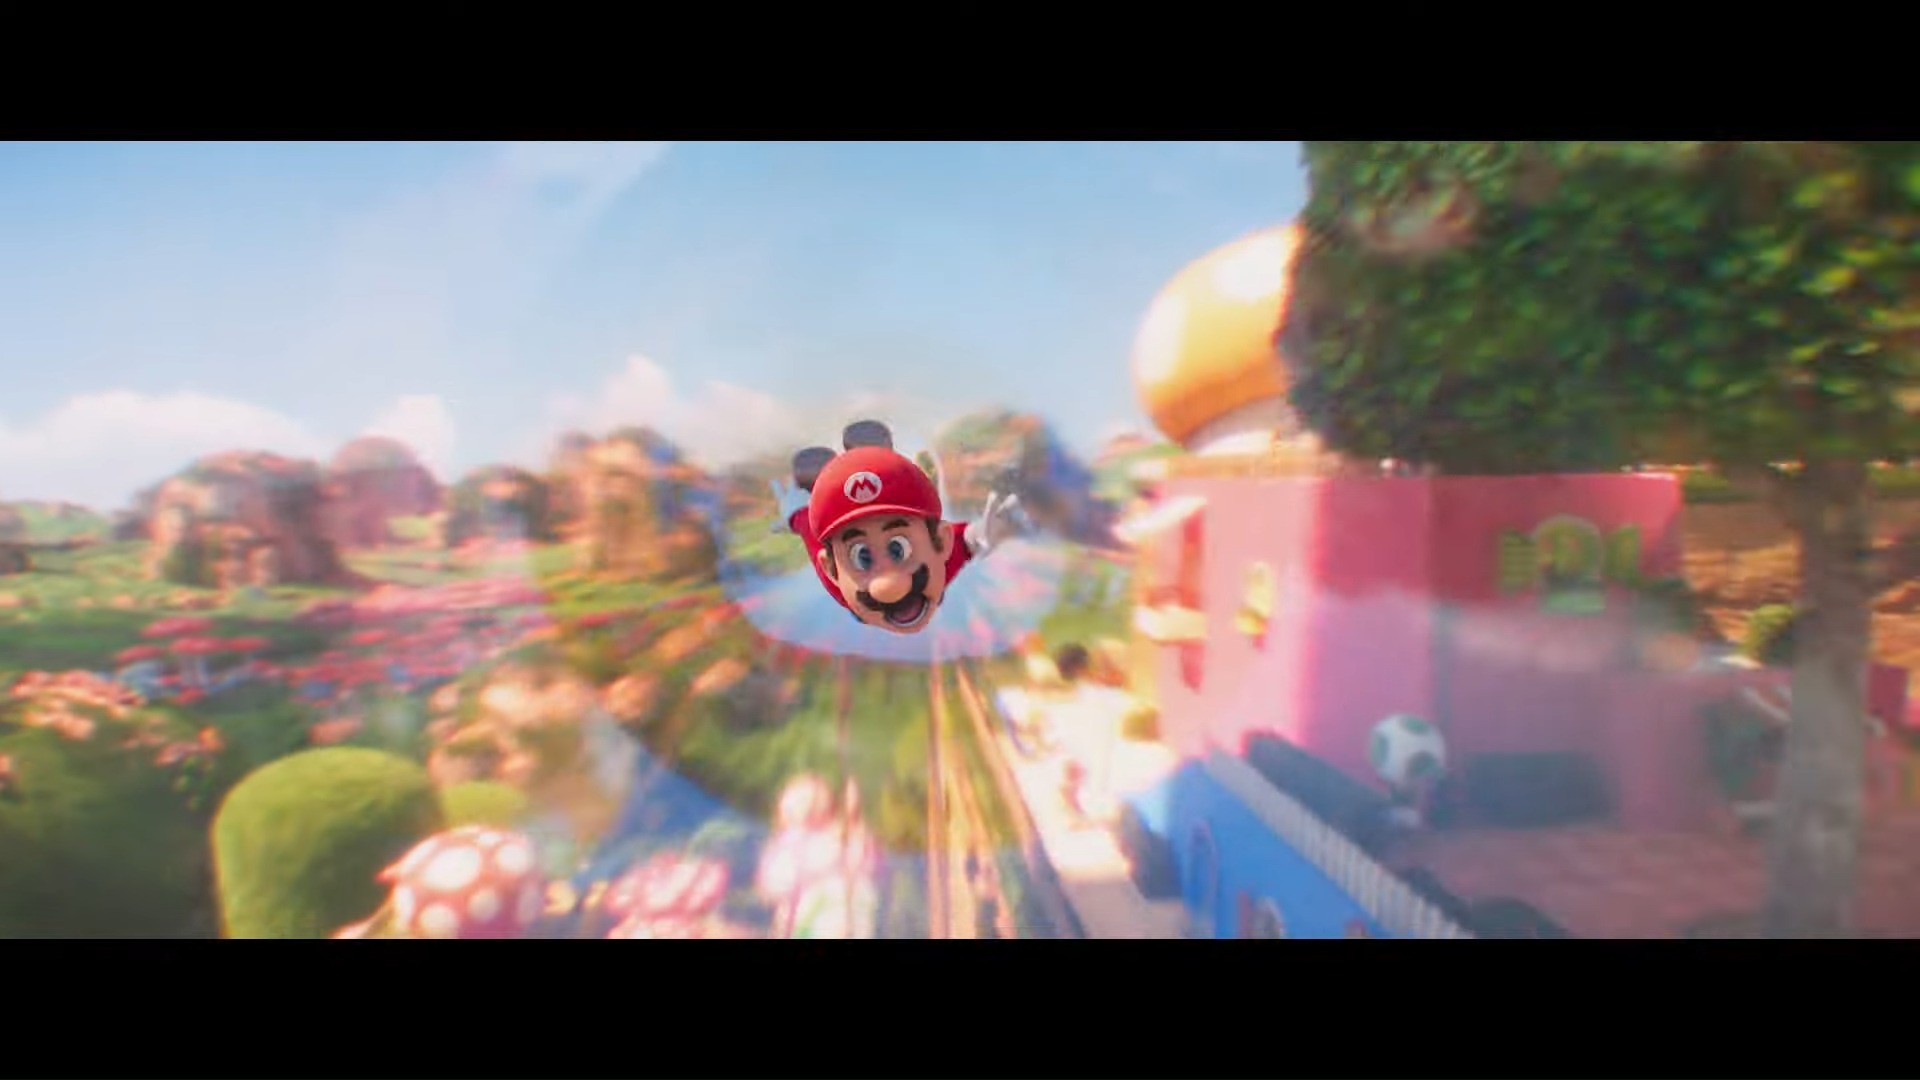 动画电影《超级玛利欧兄弟电影版》公开「蘑菇王国」电影宣传影片